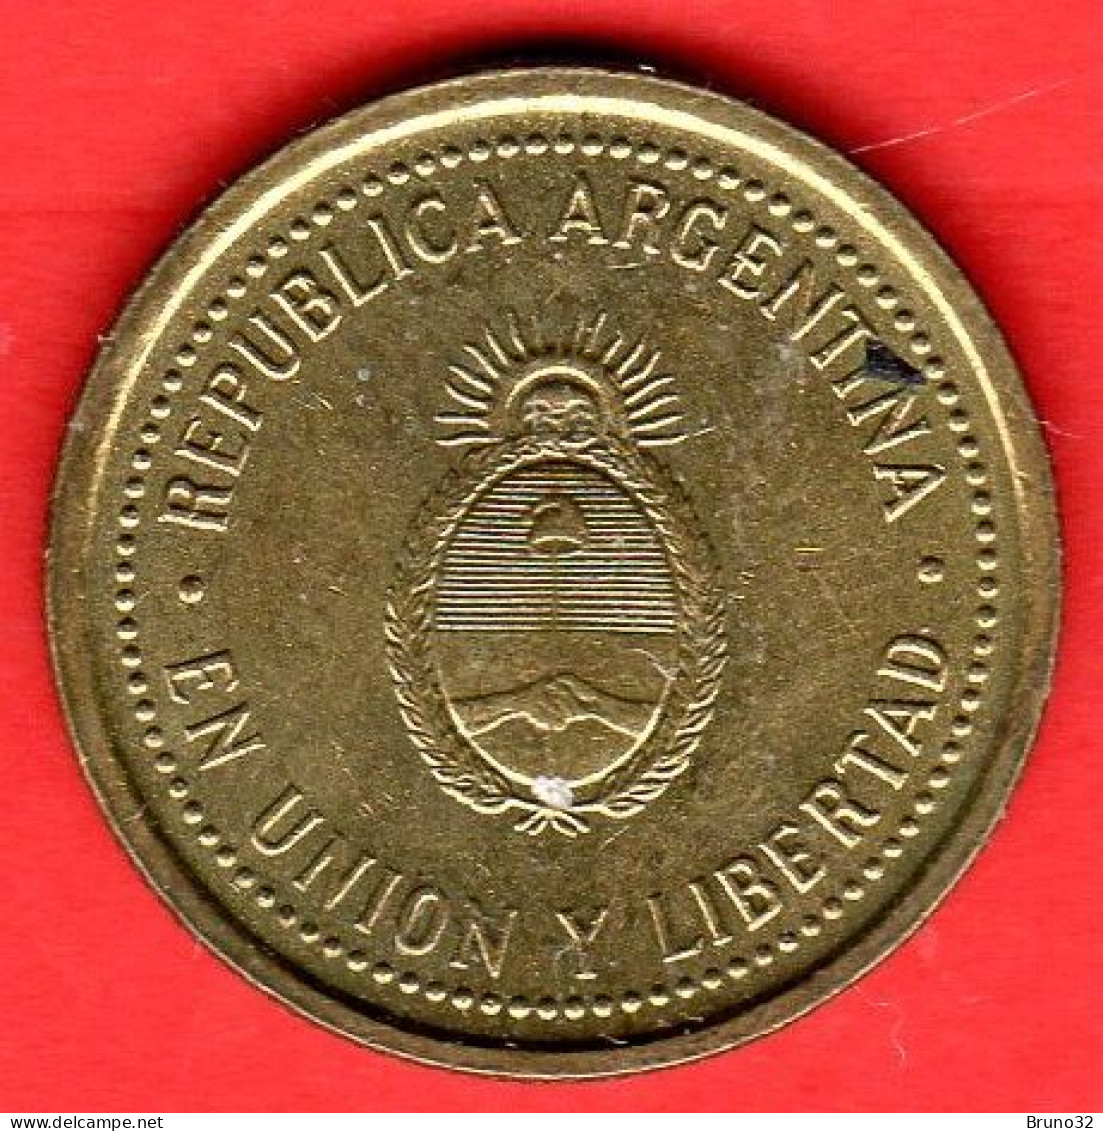 ARGENTINA - 1993 - 10 Centavos - QFDC/aUNC - Come Da Foto - Argentina